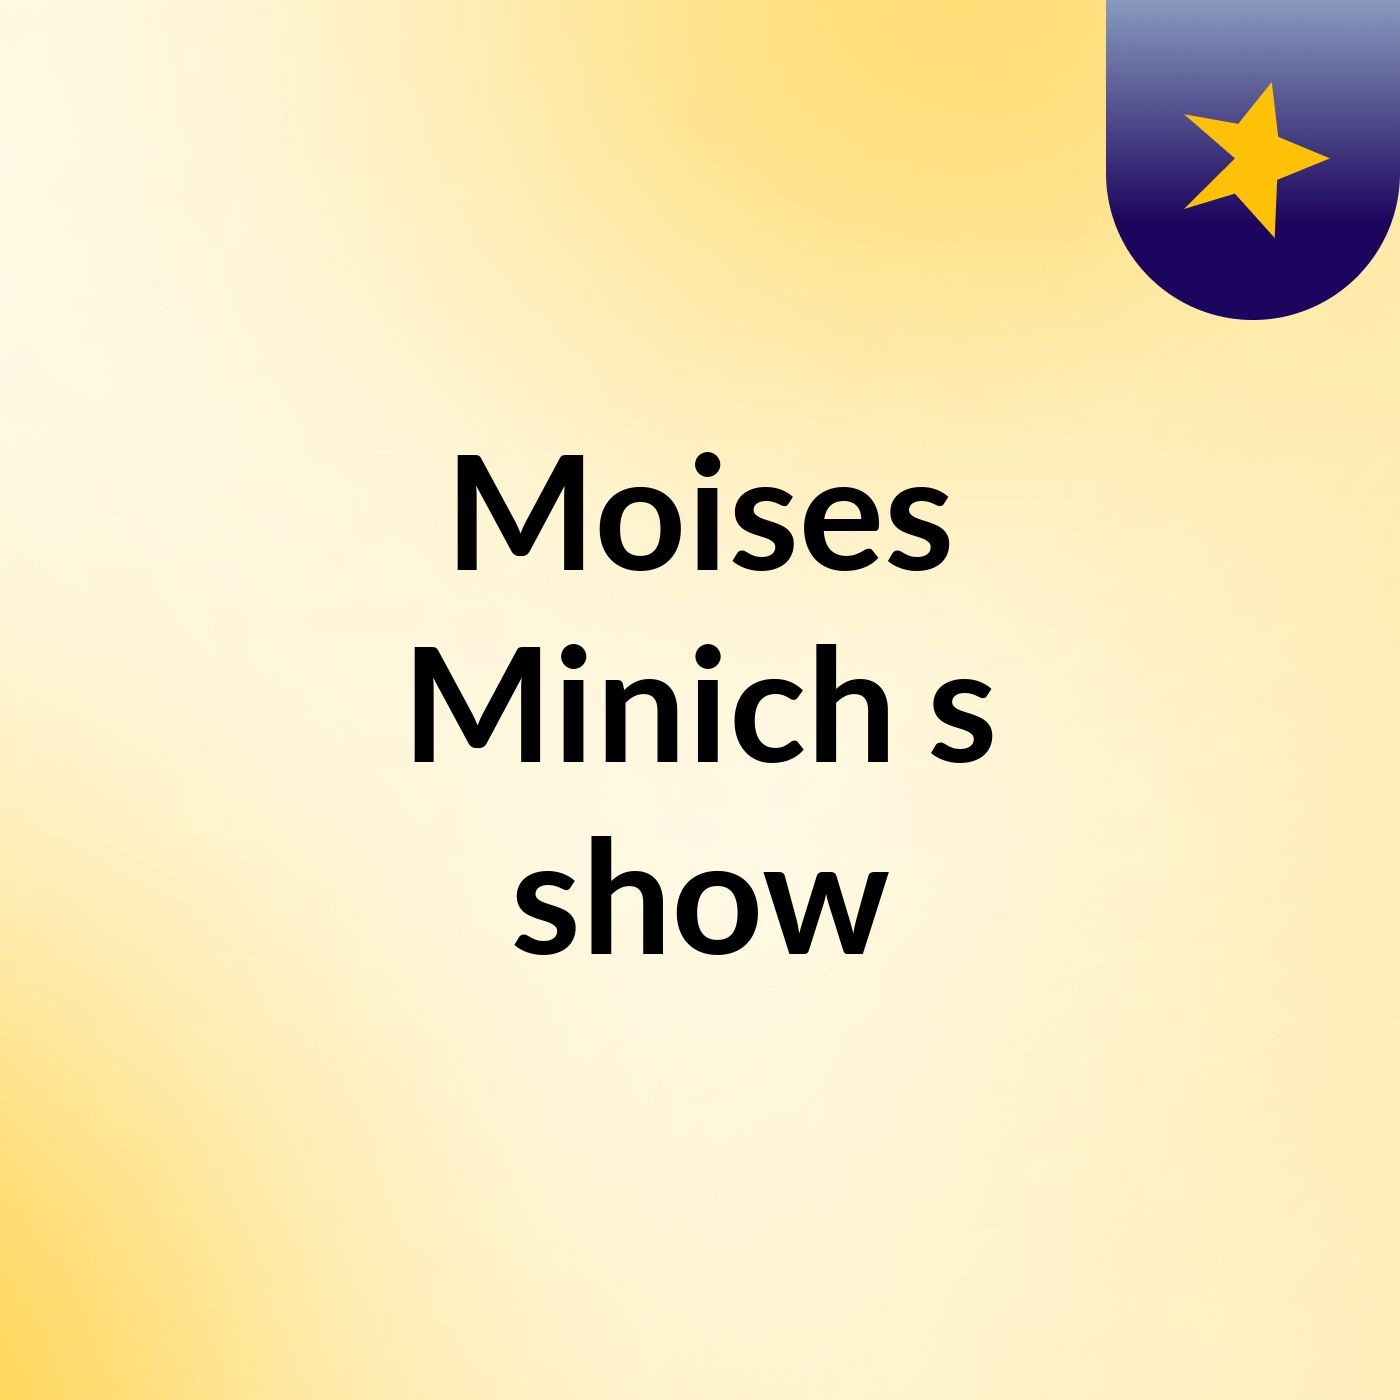 Moises Minich's show